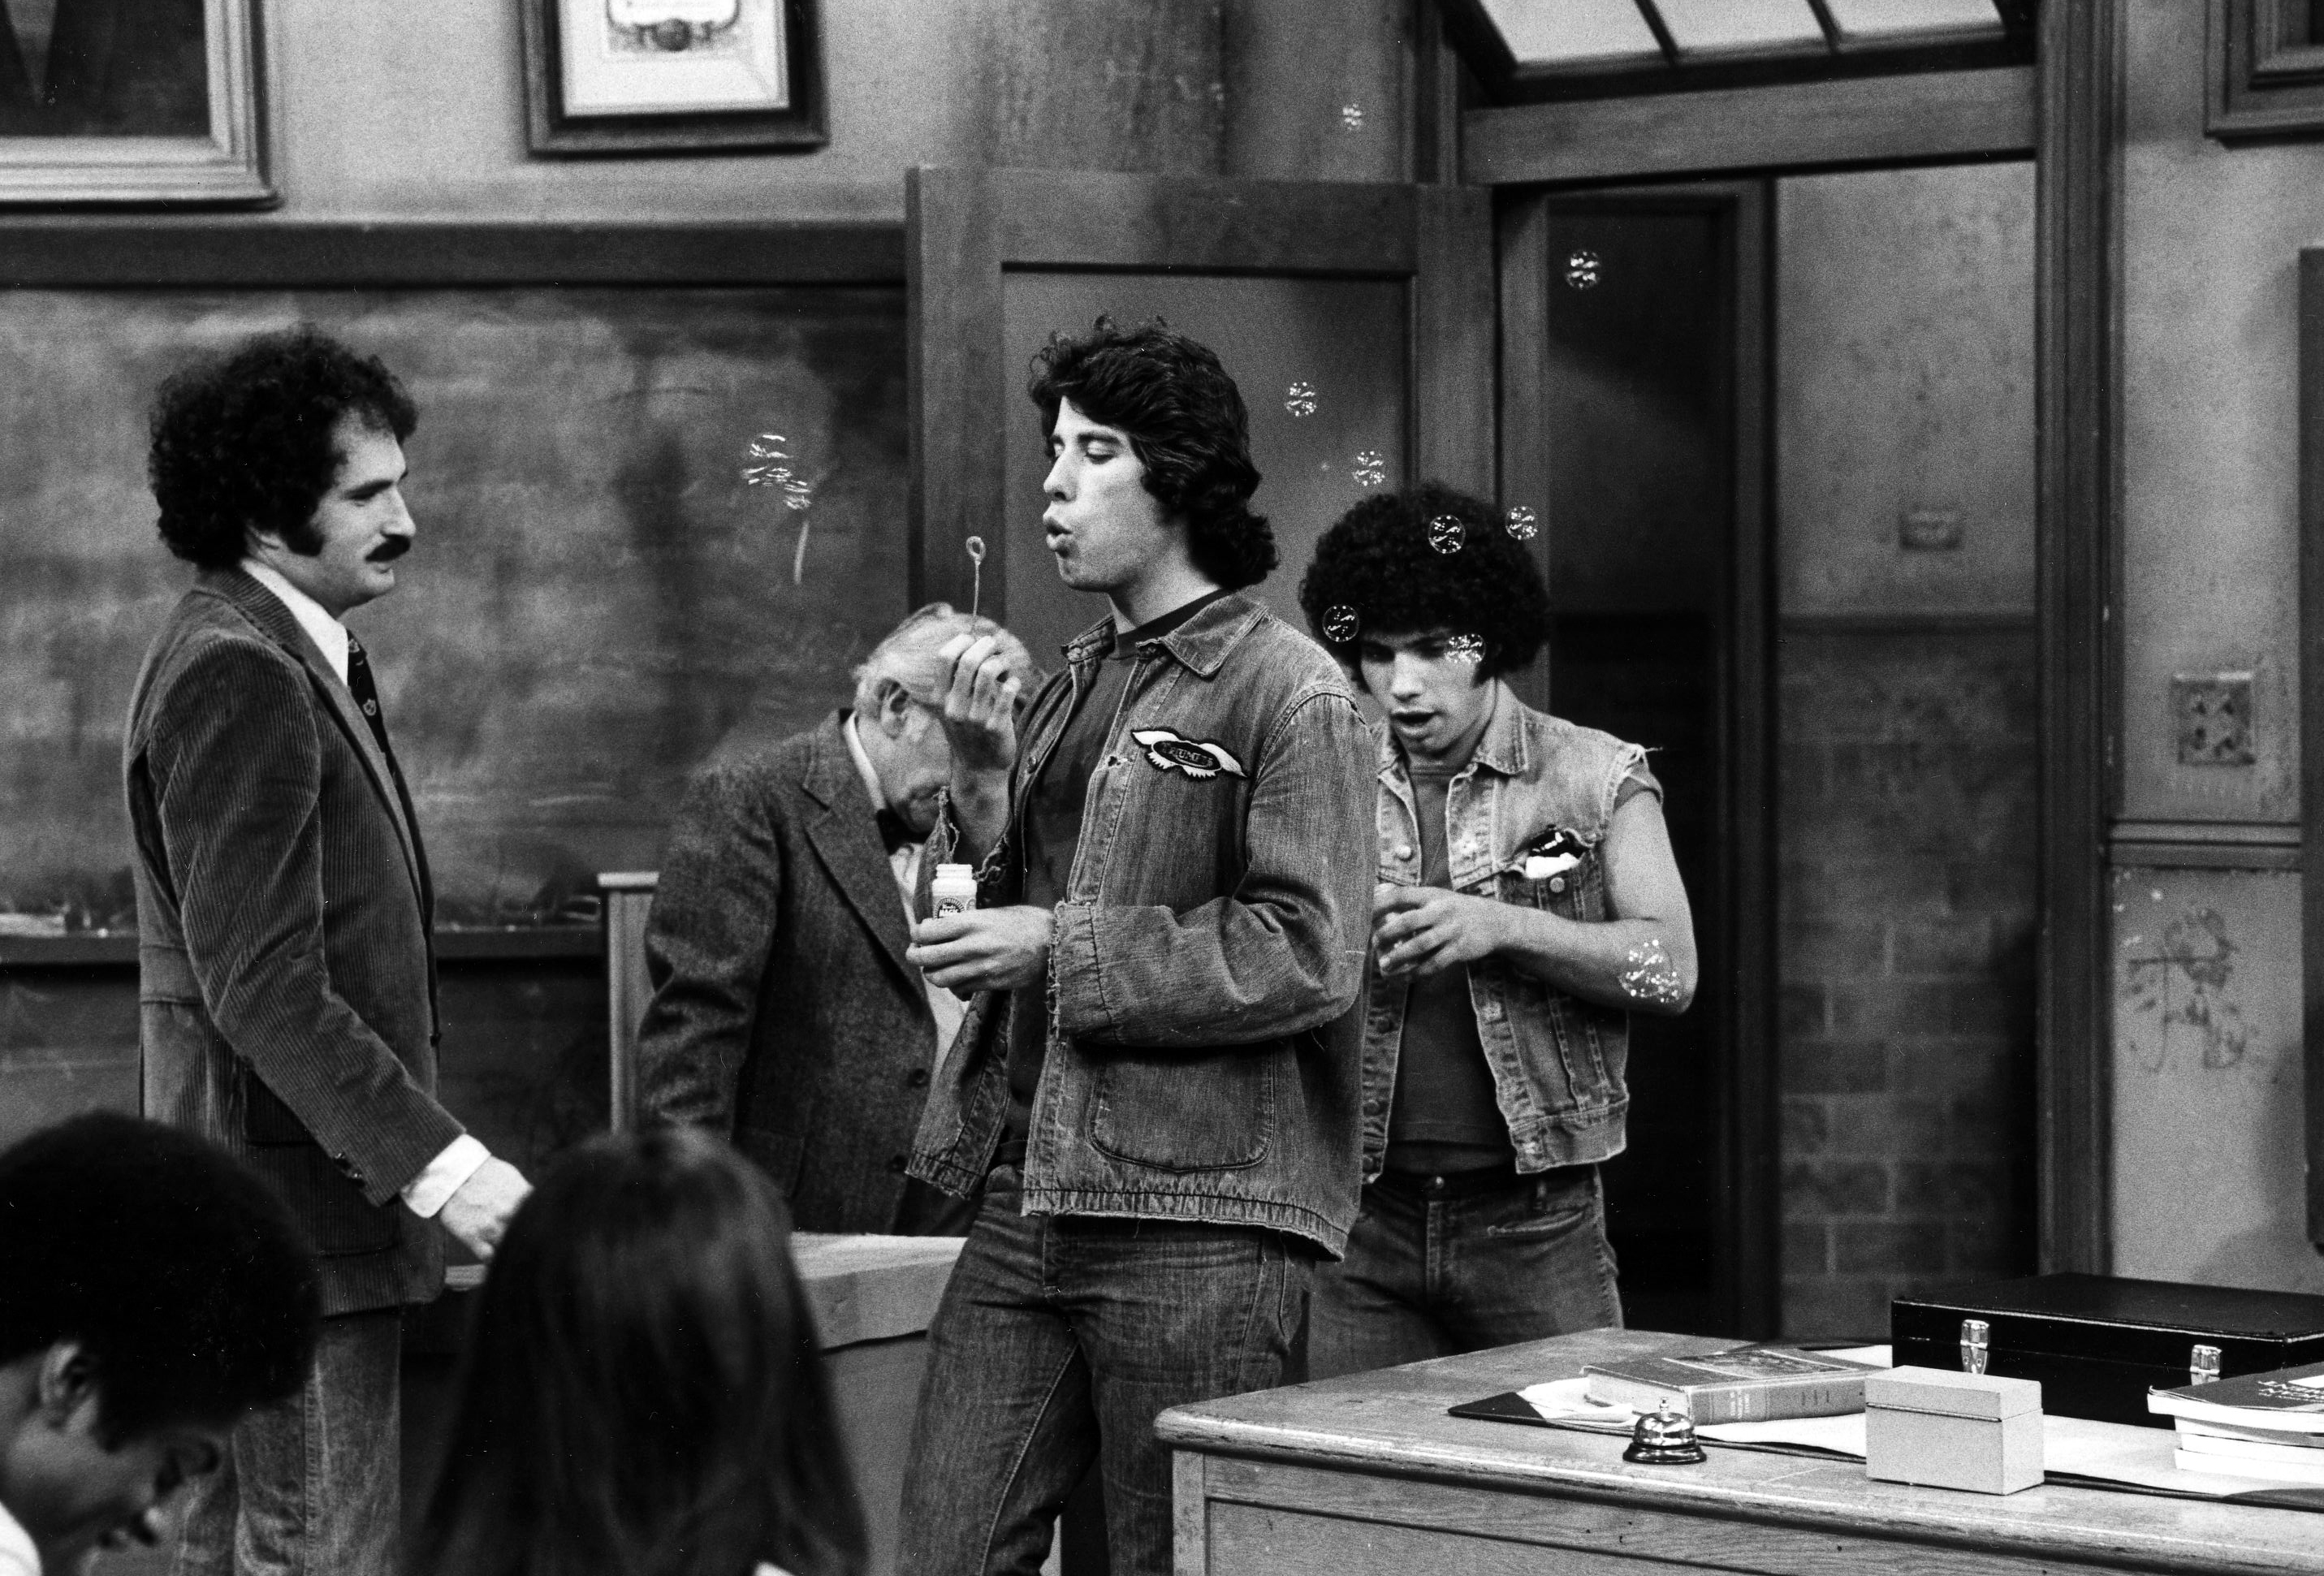 Still of John Travolta, Robert Hegyes, Gabe Kaplan and John Sylvester White in Welcome Back, Kotter (1975)